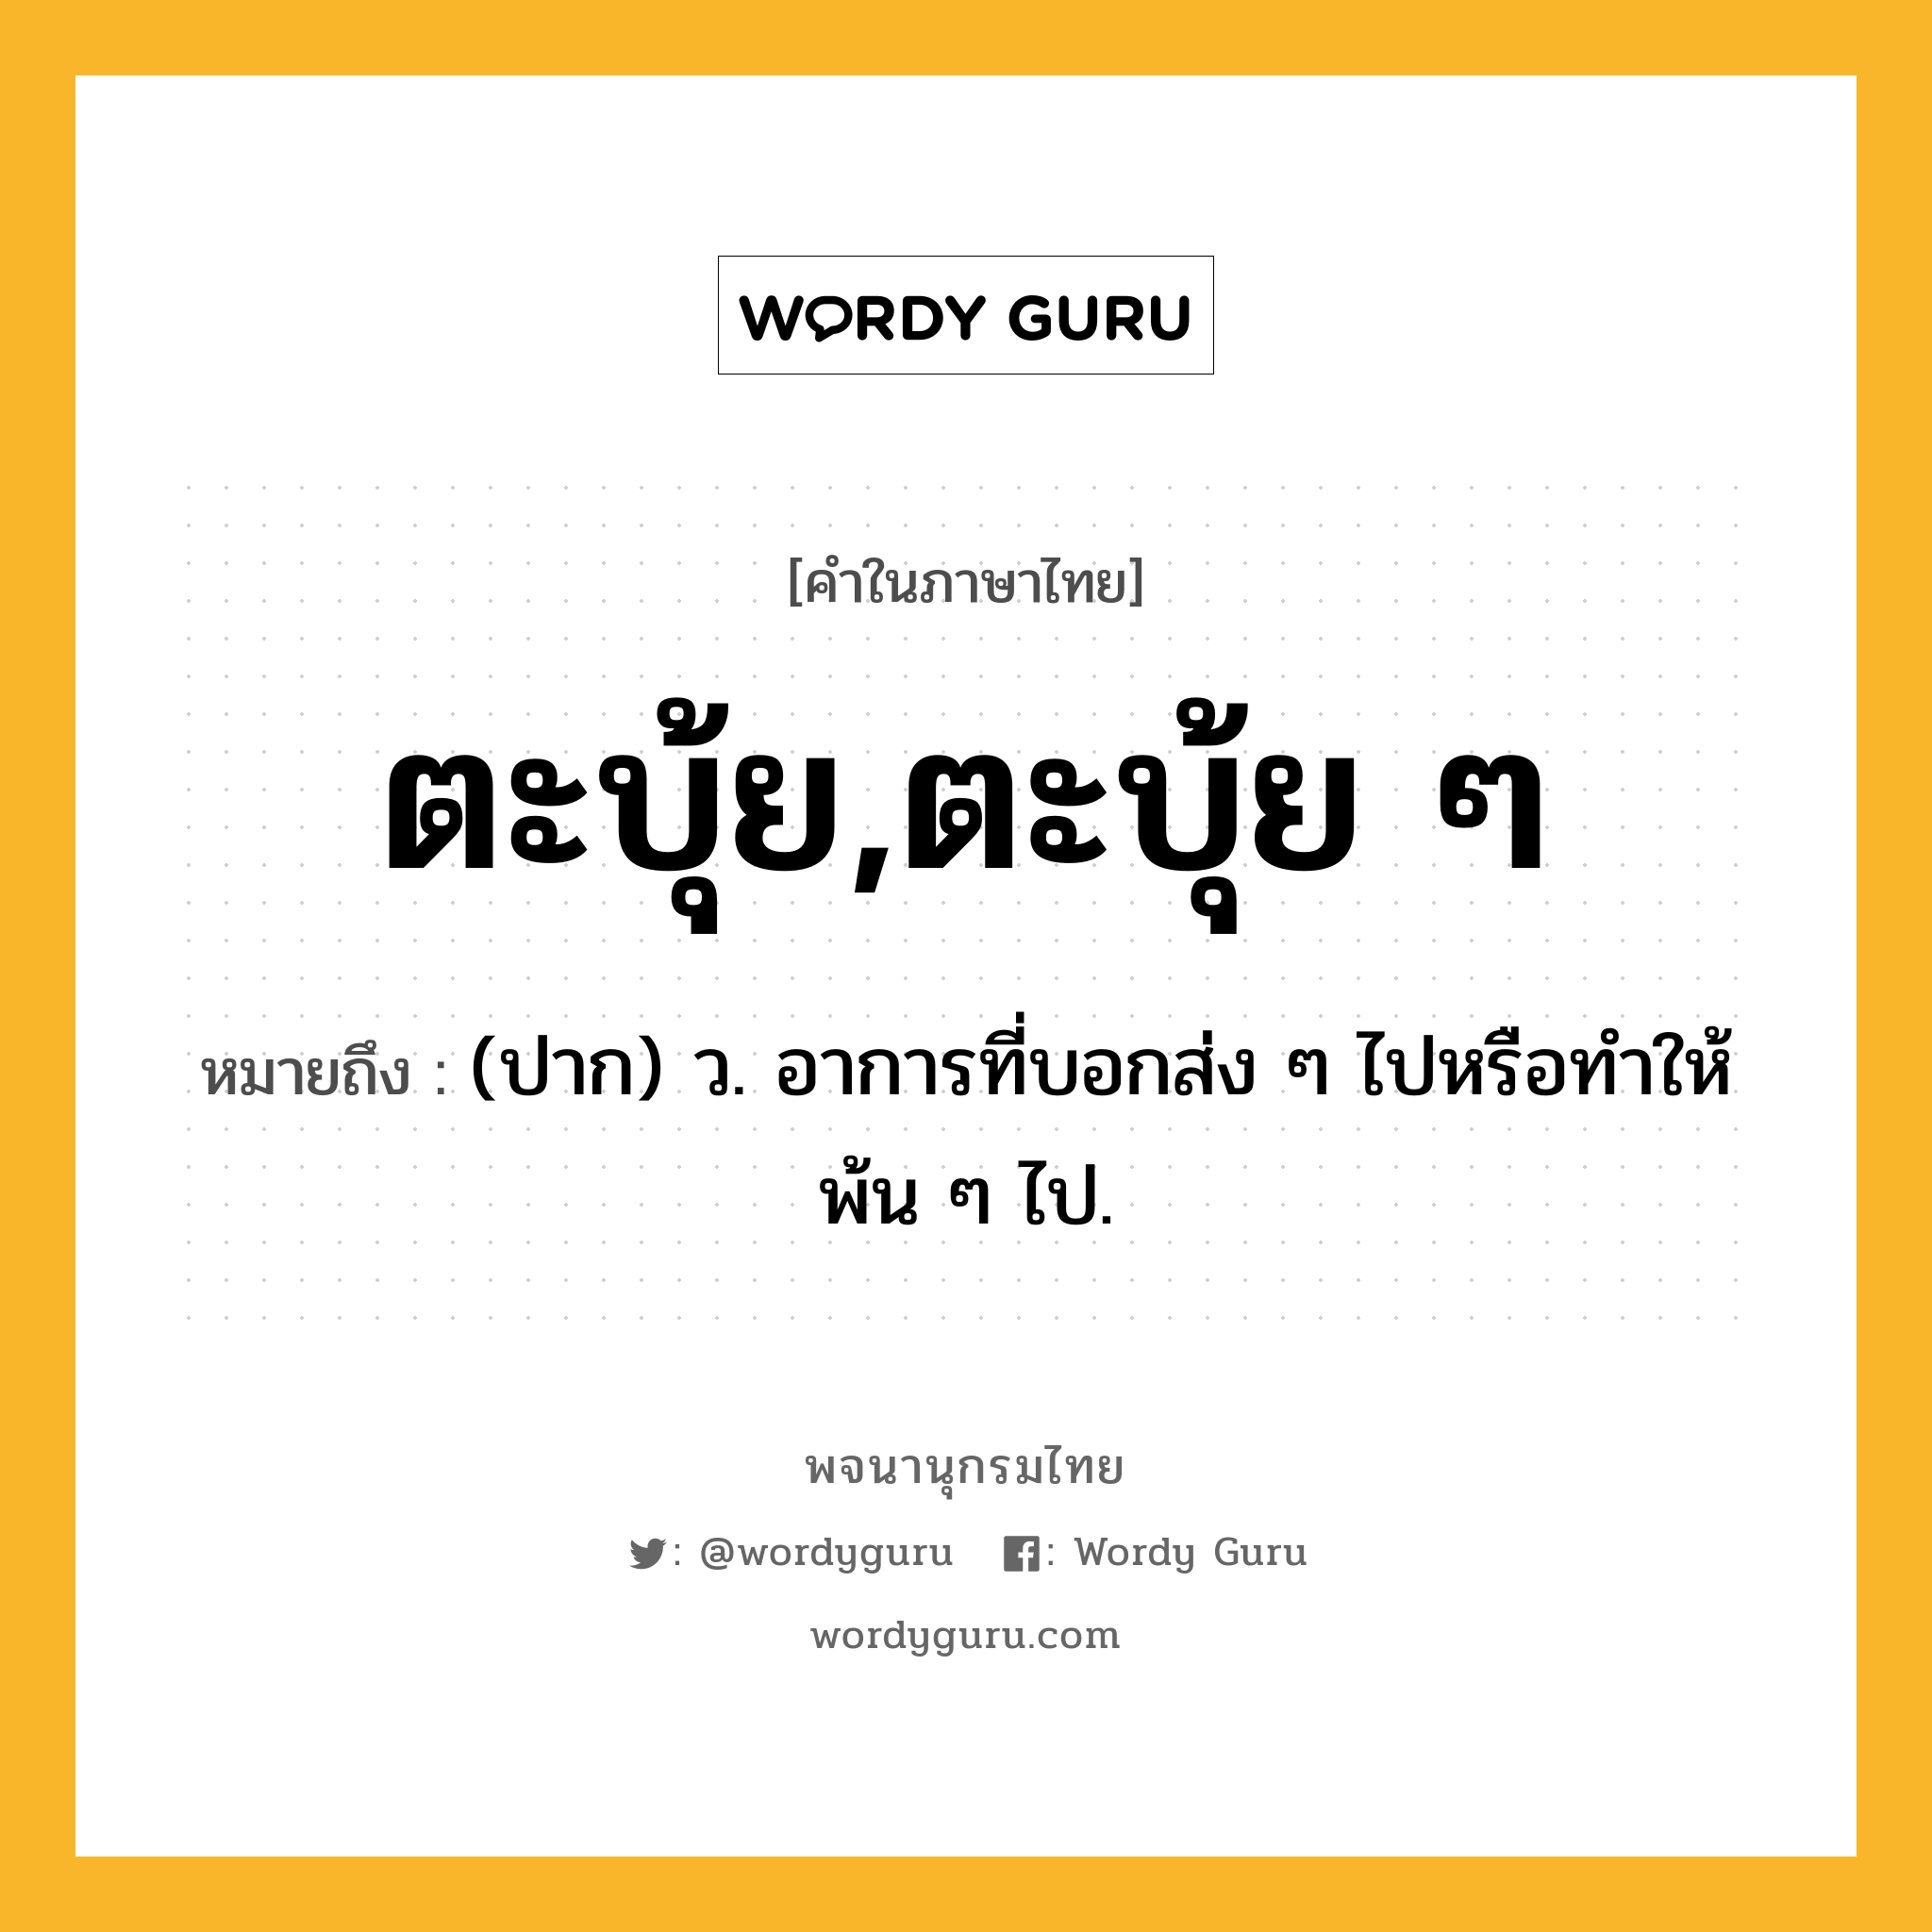 ตะบุ้ย,ตะบุ้ย ๆ หมายถึงอะไร?, คำในภาษาไทย ตะบุ้ย,ตะบุ้ย ๆ หมายถึง (ปาก) ว. อาการที่บอกส่ง ๆ ไปหรือทําให้พ้น ๆ ไป.